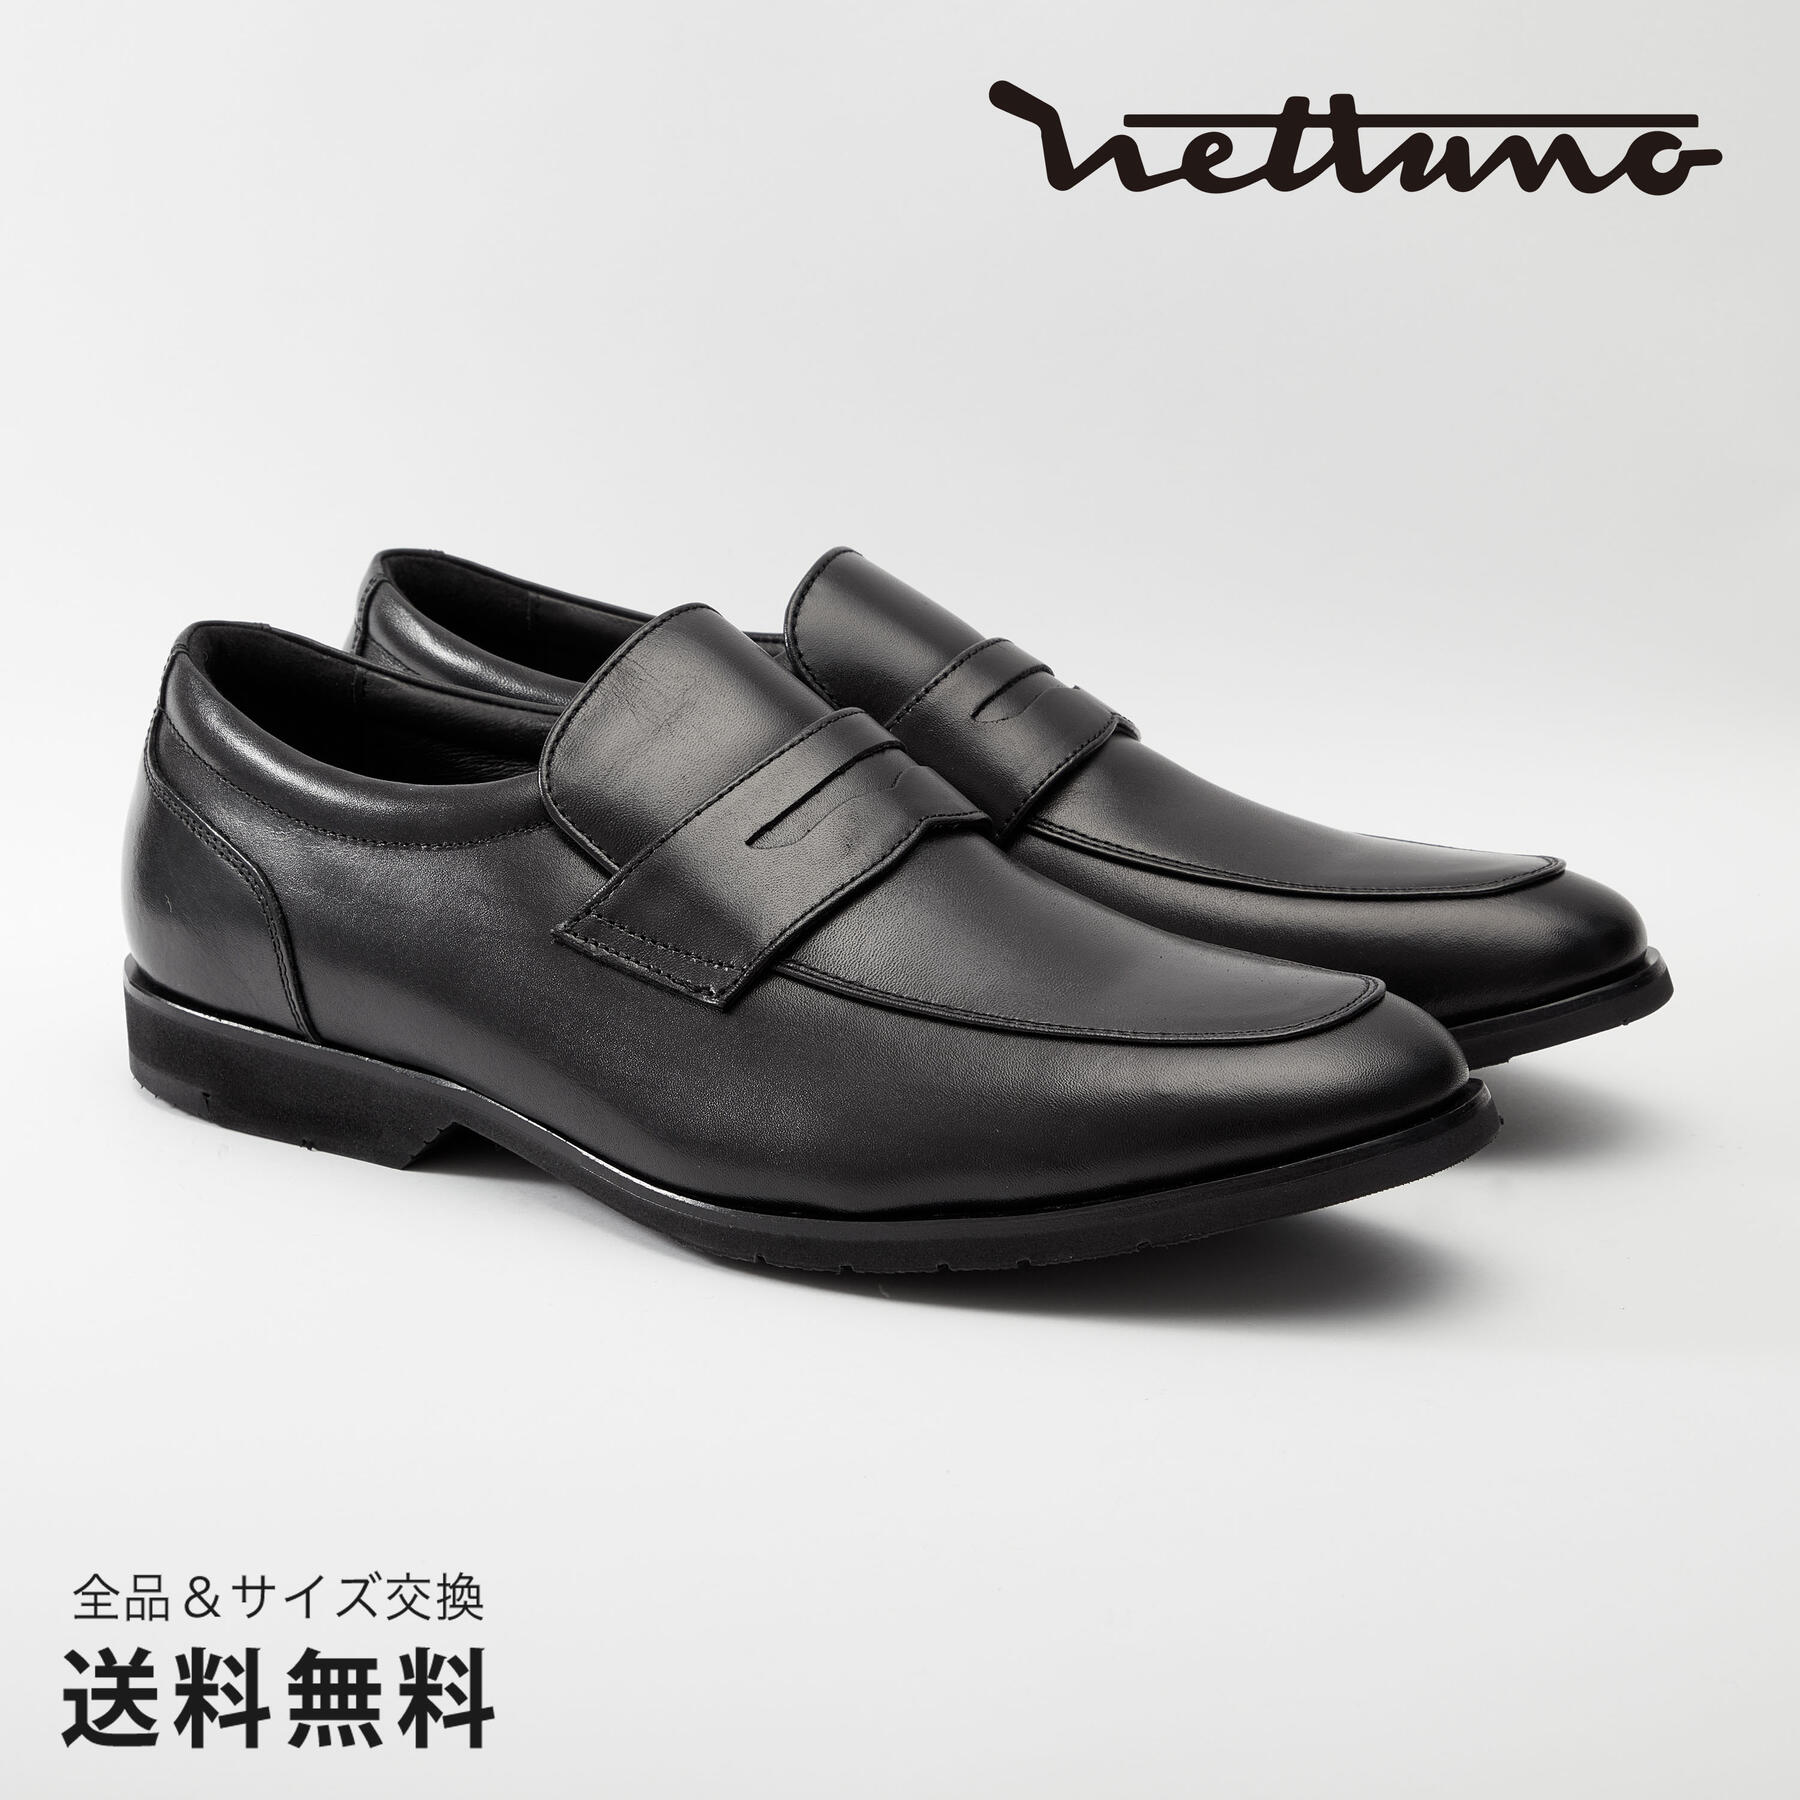 NETTUNO ネッツーノ コインローファー 4E 革靴 防水キップレザー ラバーソール ブラック セメンテッド 黒 BLACK 64618 日本 靴 メンズ靴 ビジネスシューズ サイズ 23.5 - 27.5cm 